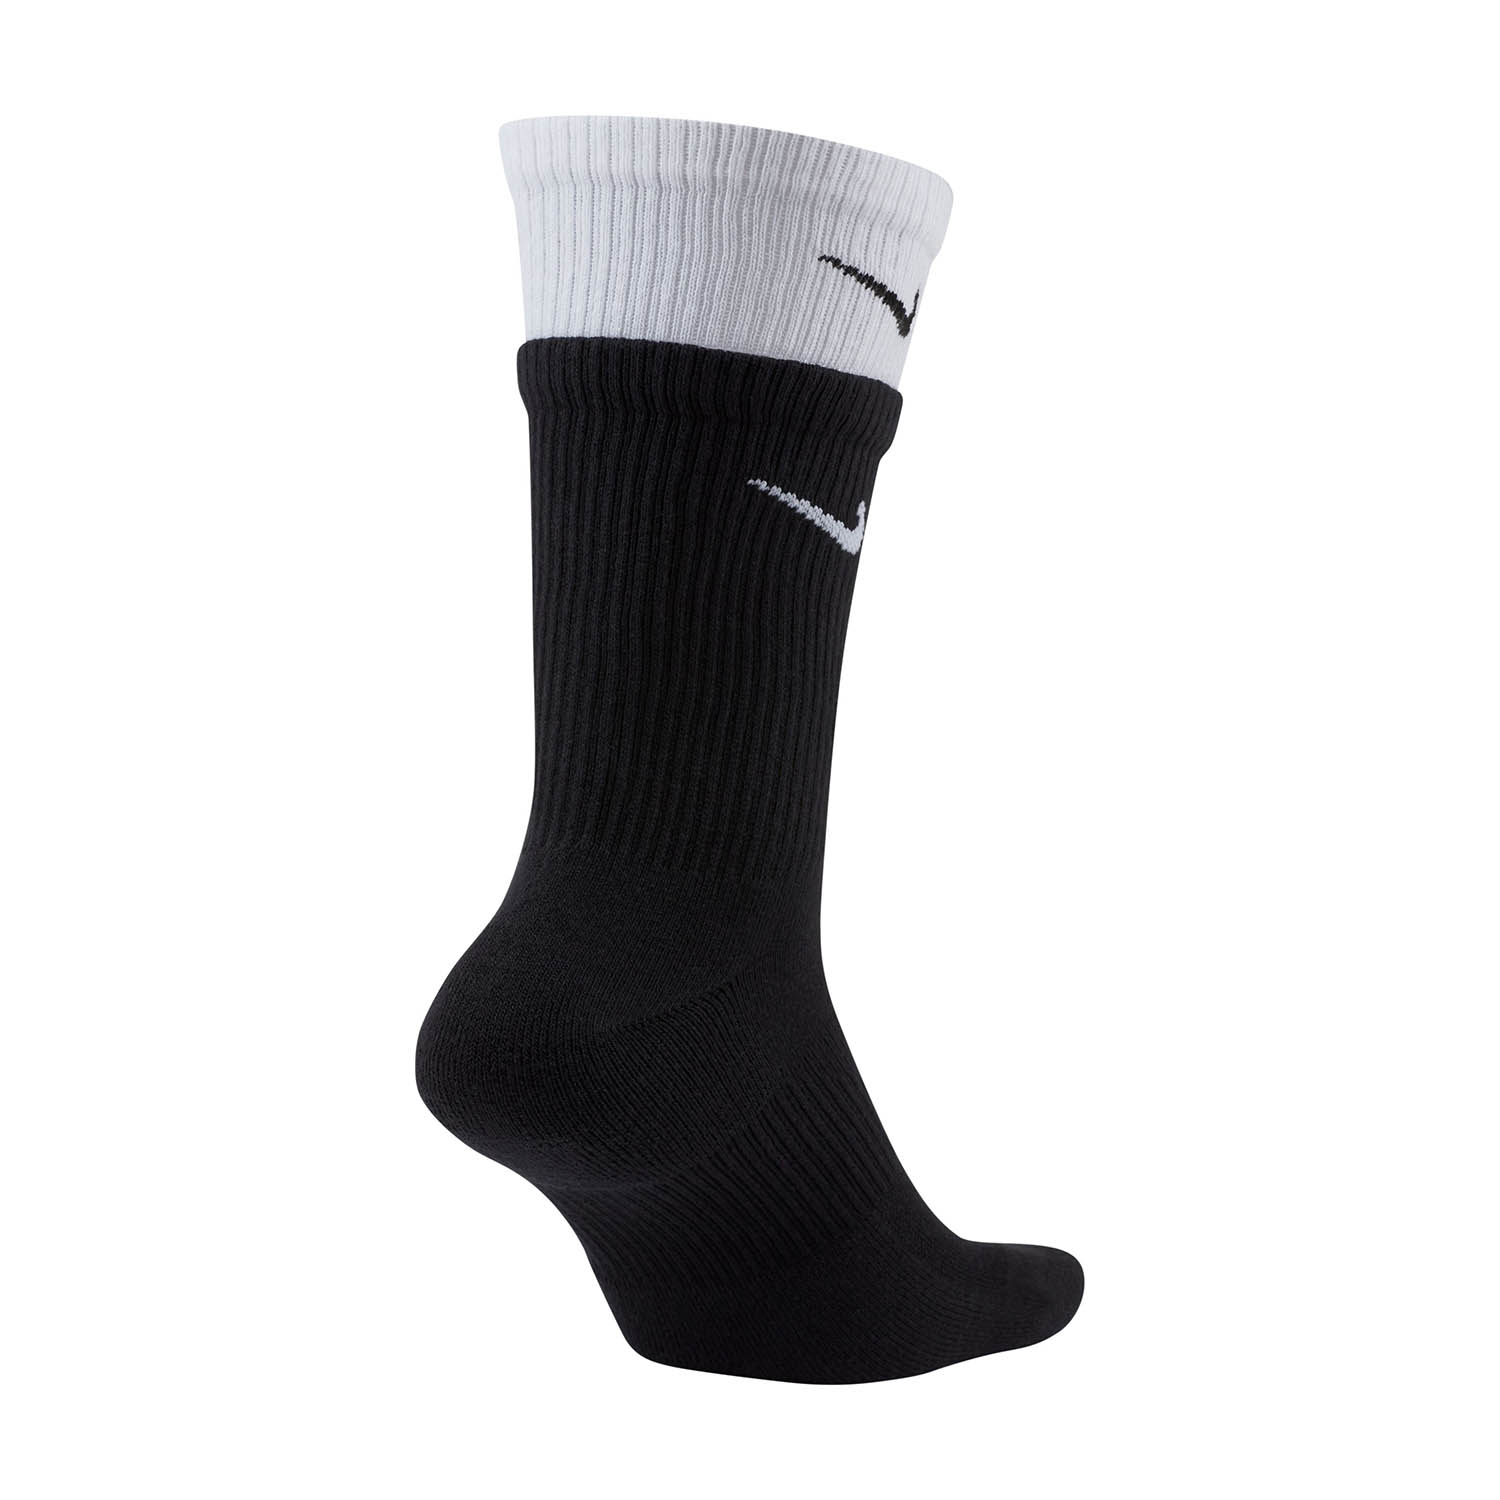 Nike Everyday Plus Cushioned Training Socks - Black/White